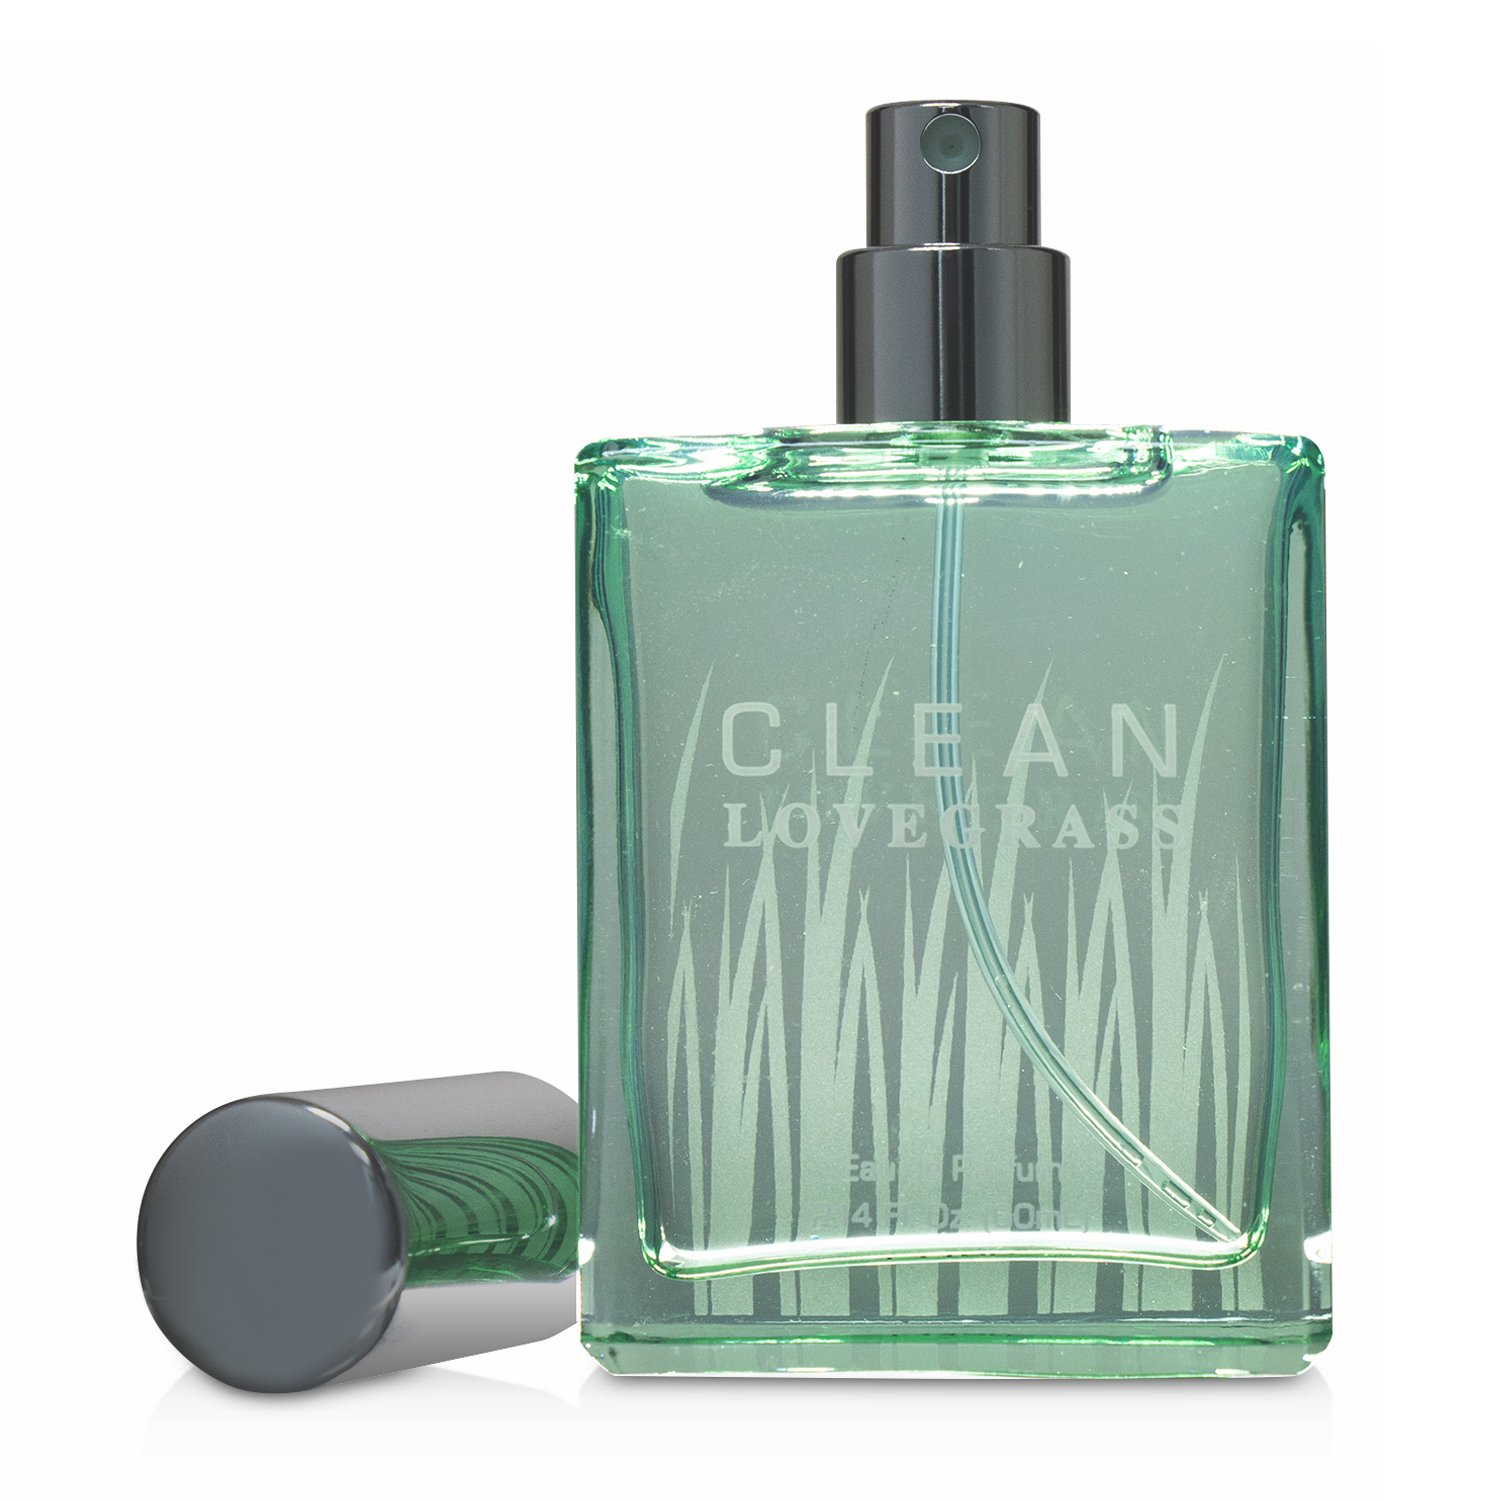 Clean Lovegrass Eau De Parfum Spray 60ml/2oz